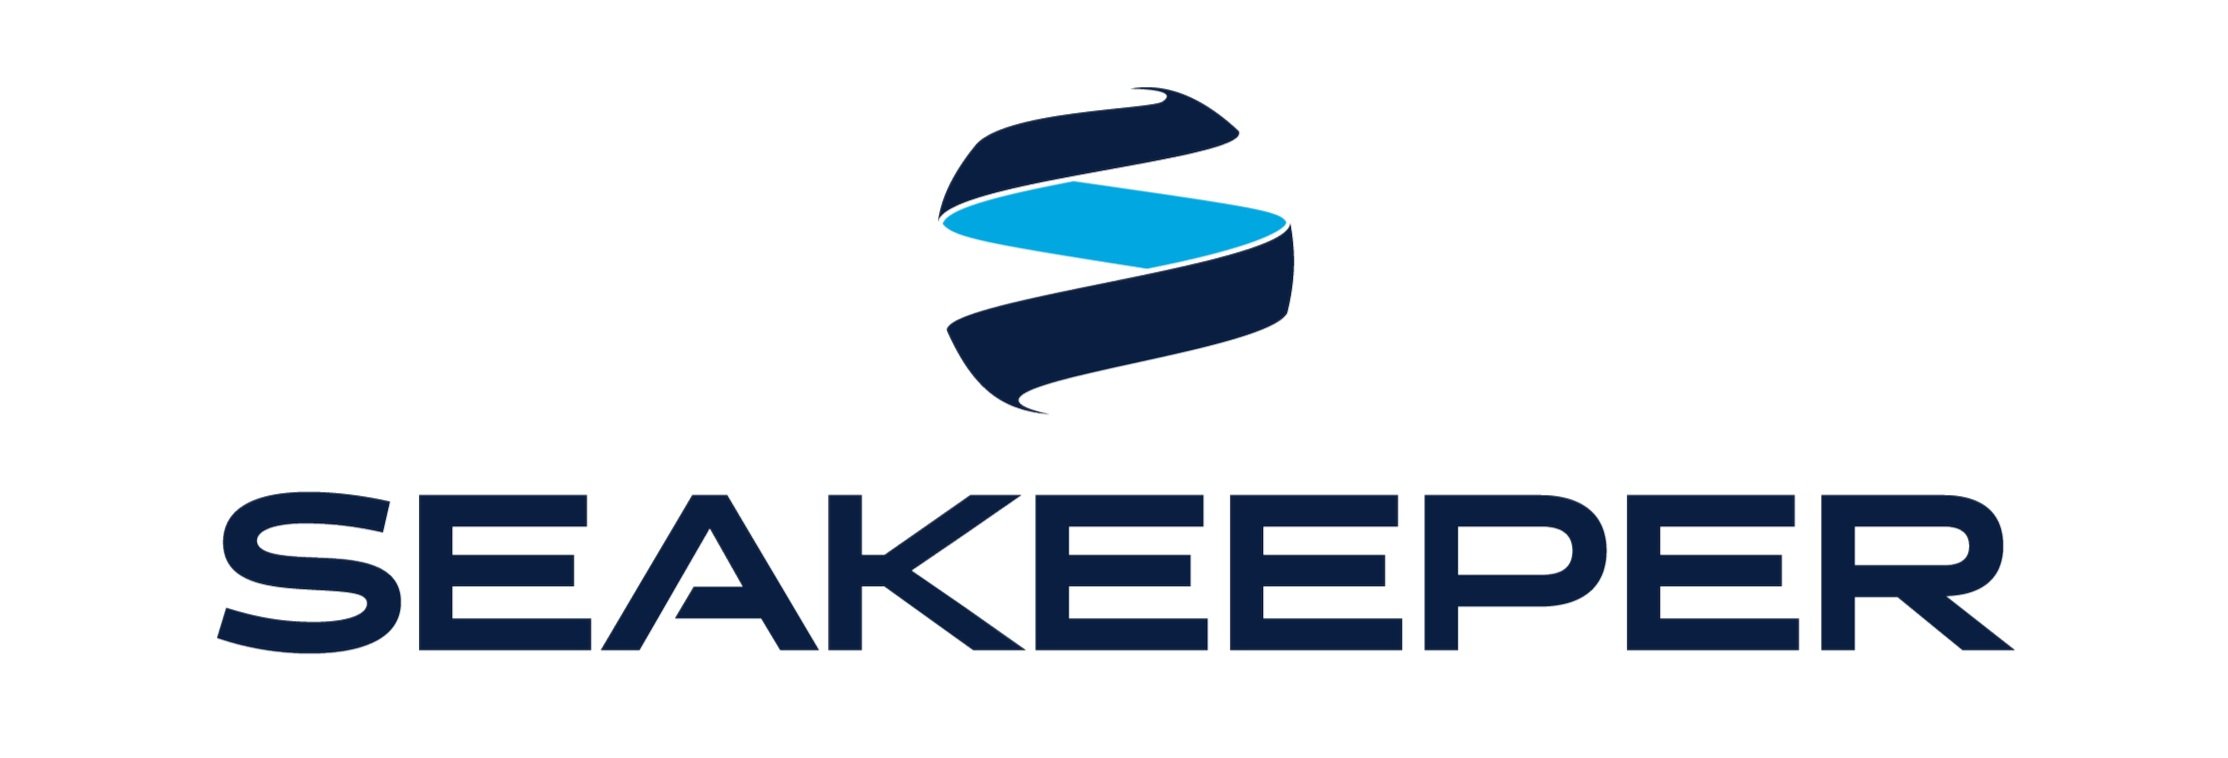 Seakeeper-Dealer-Vertical-Logo-Full-Color.jpg